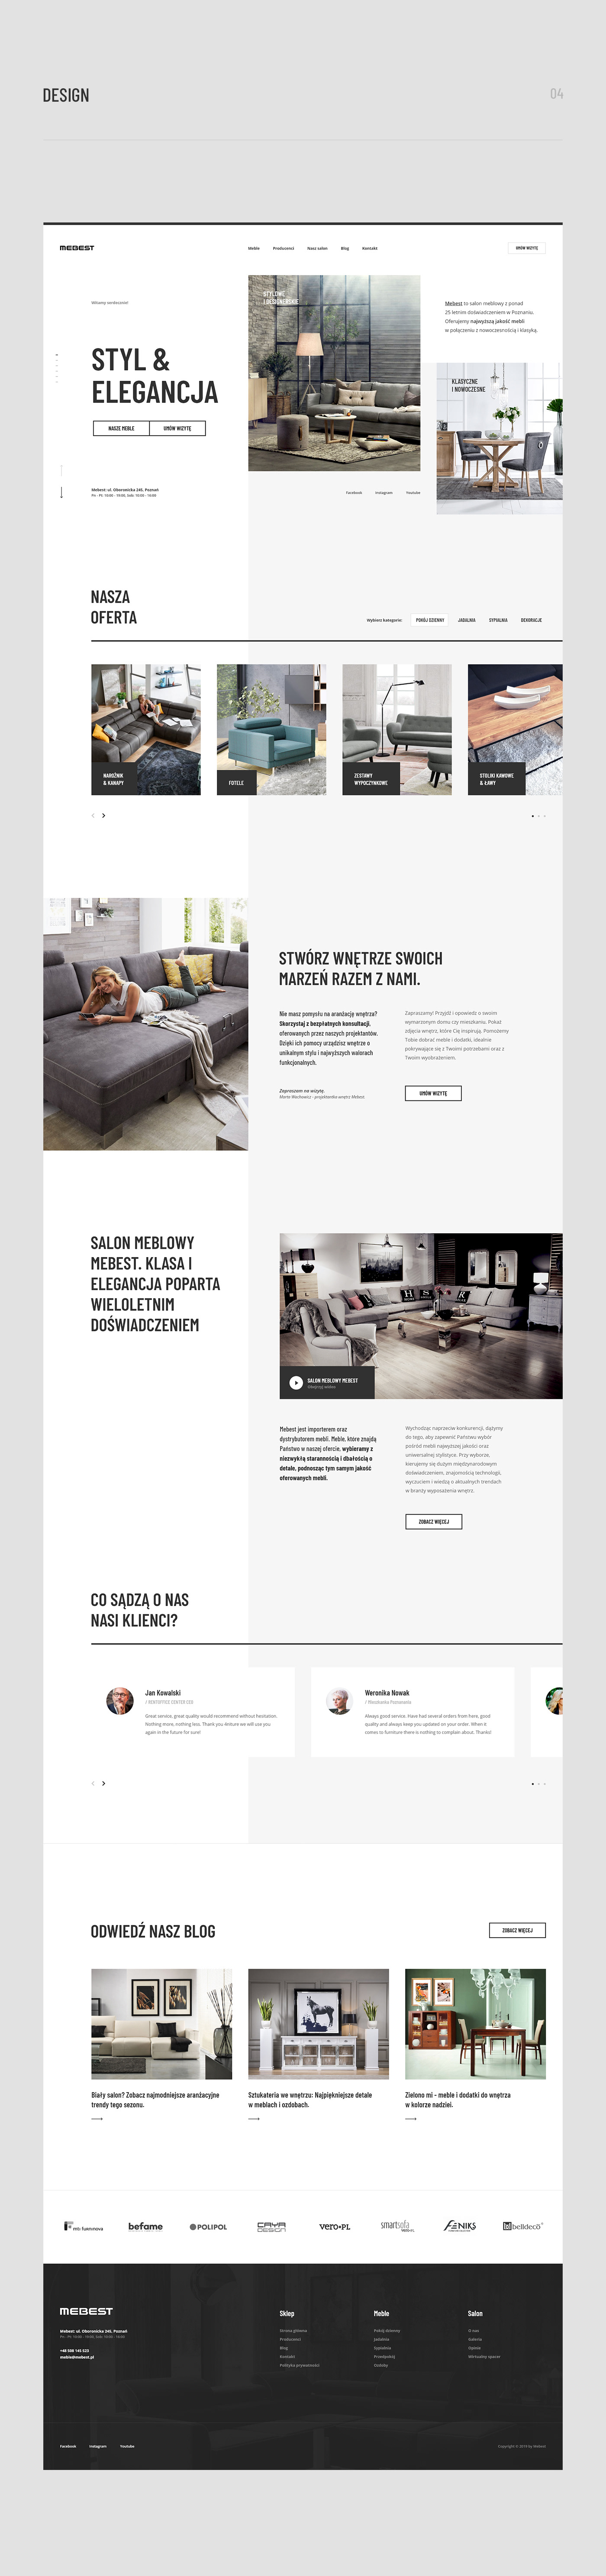 furniture store redesign Website Ecommerce premium luxury